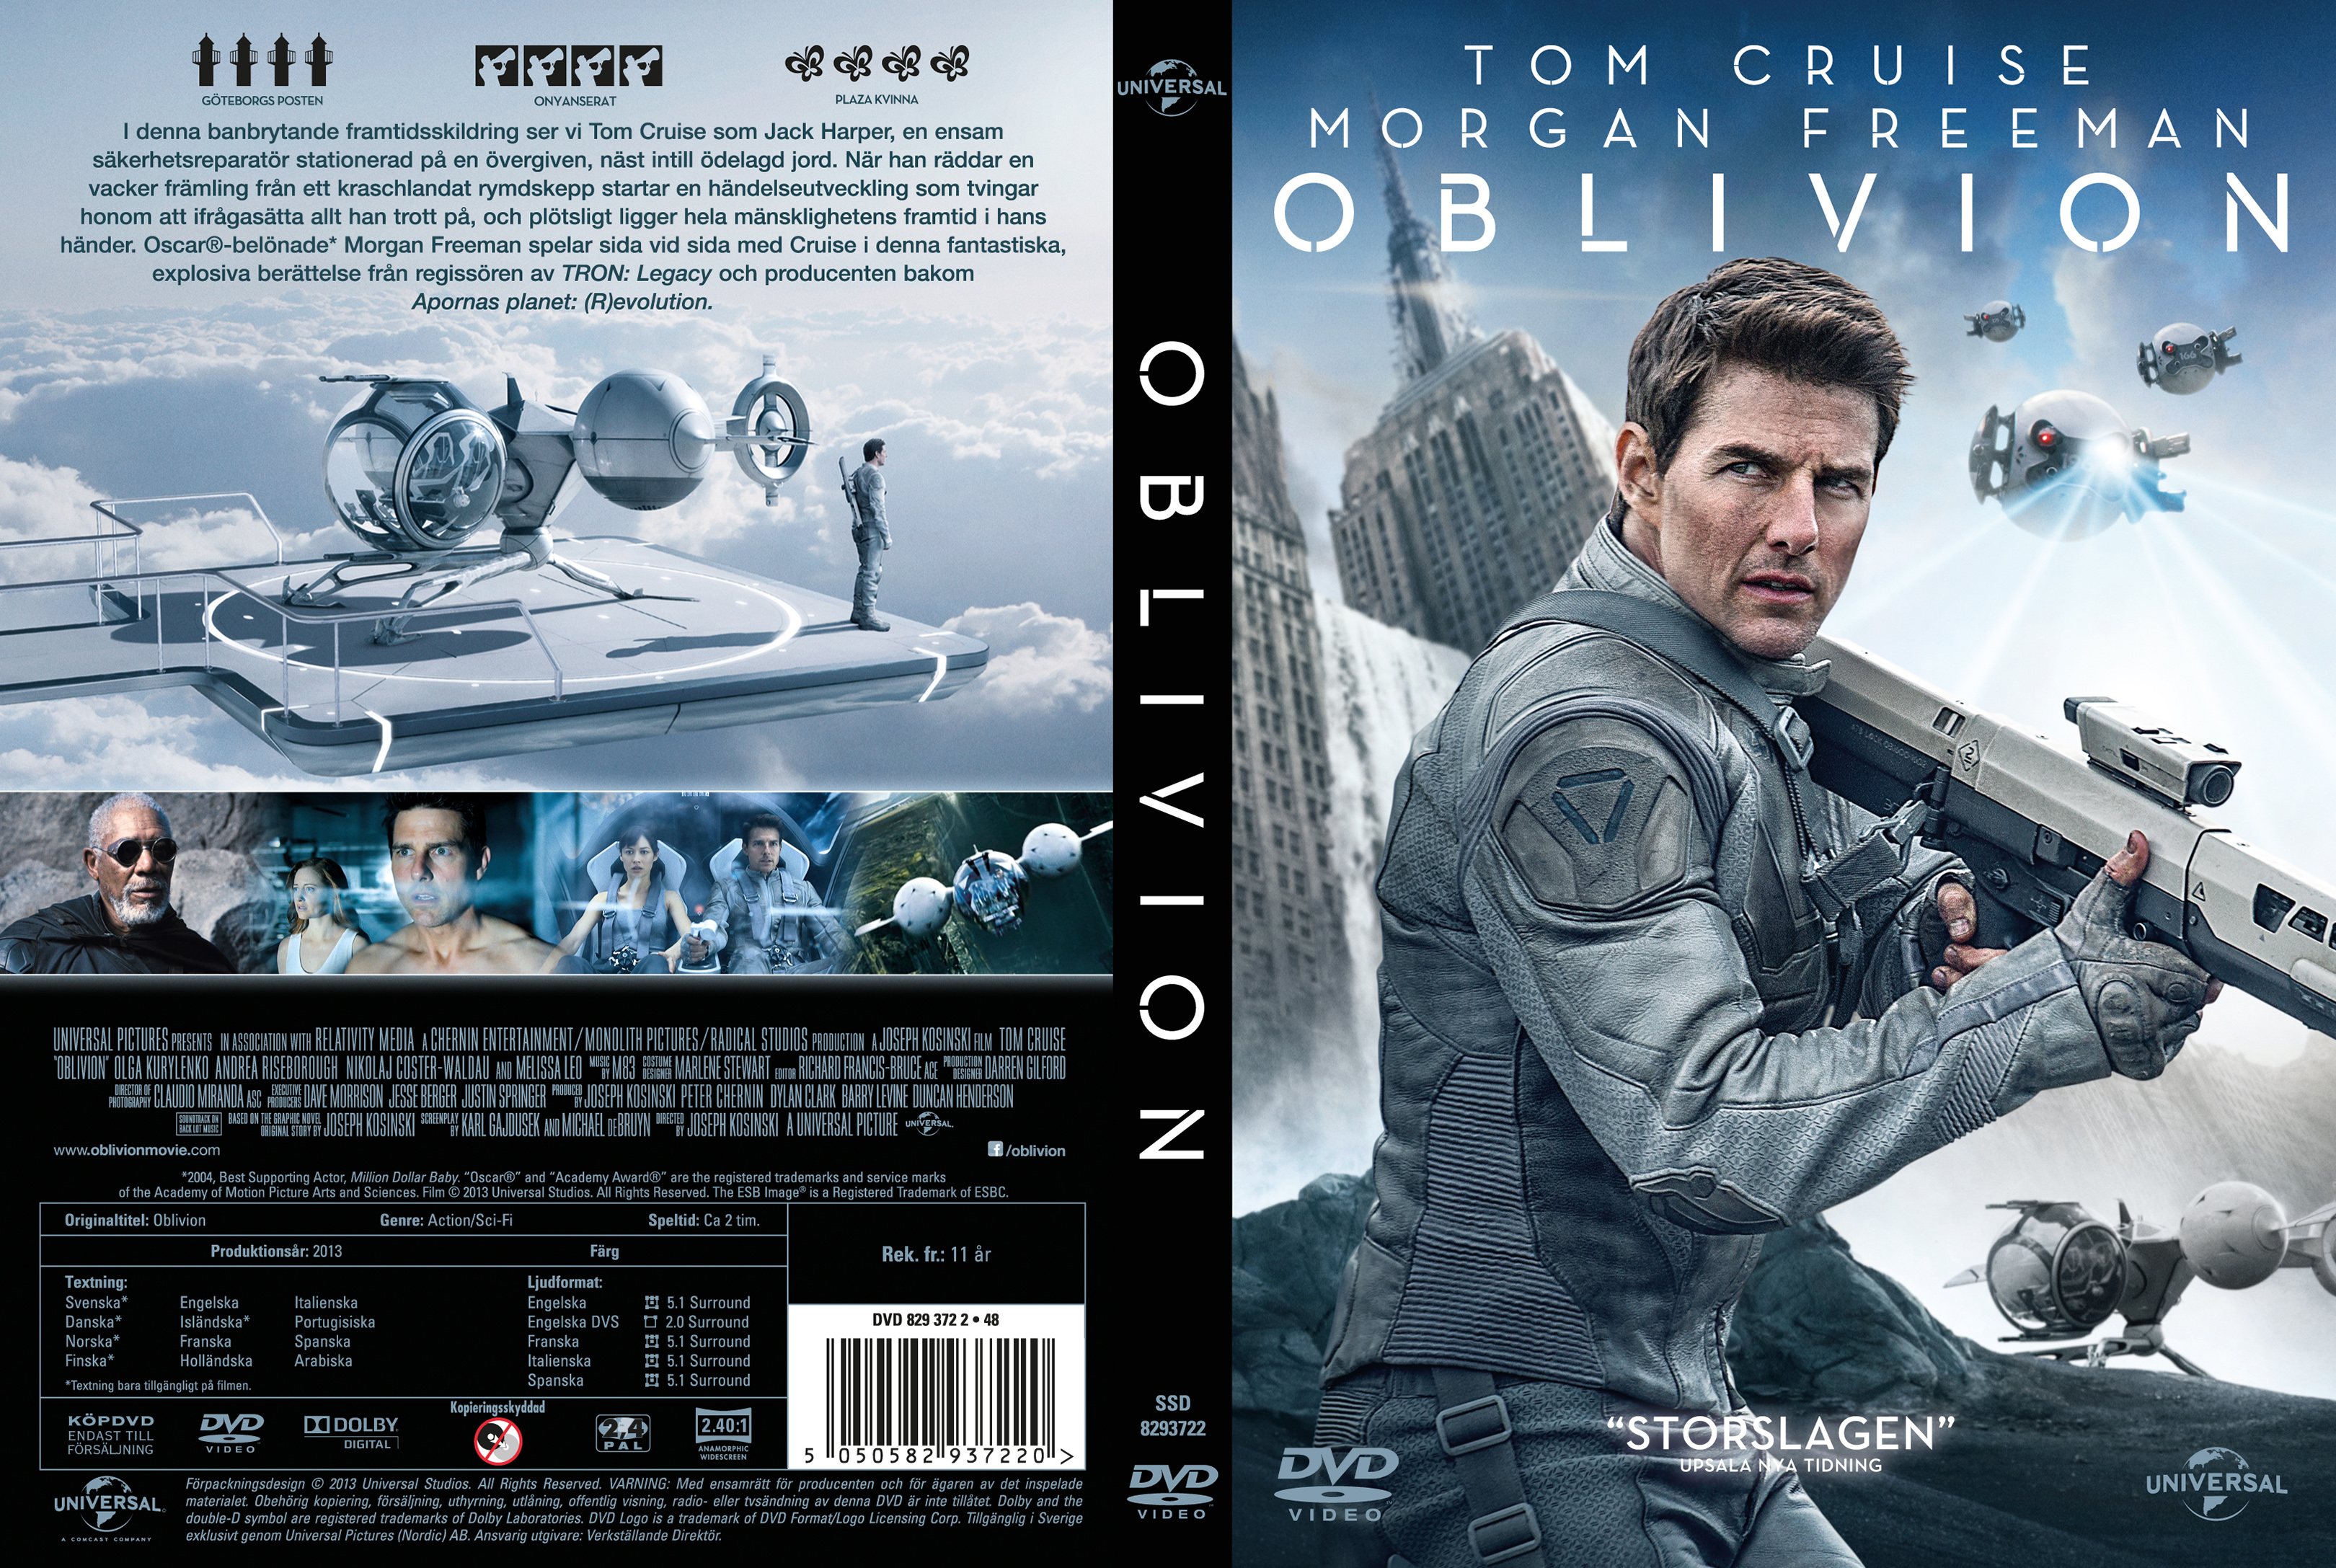 oblivion dvd label